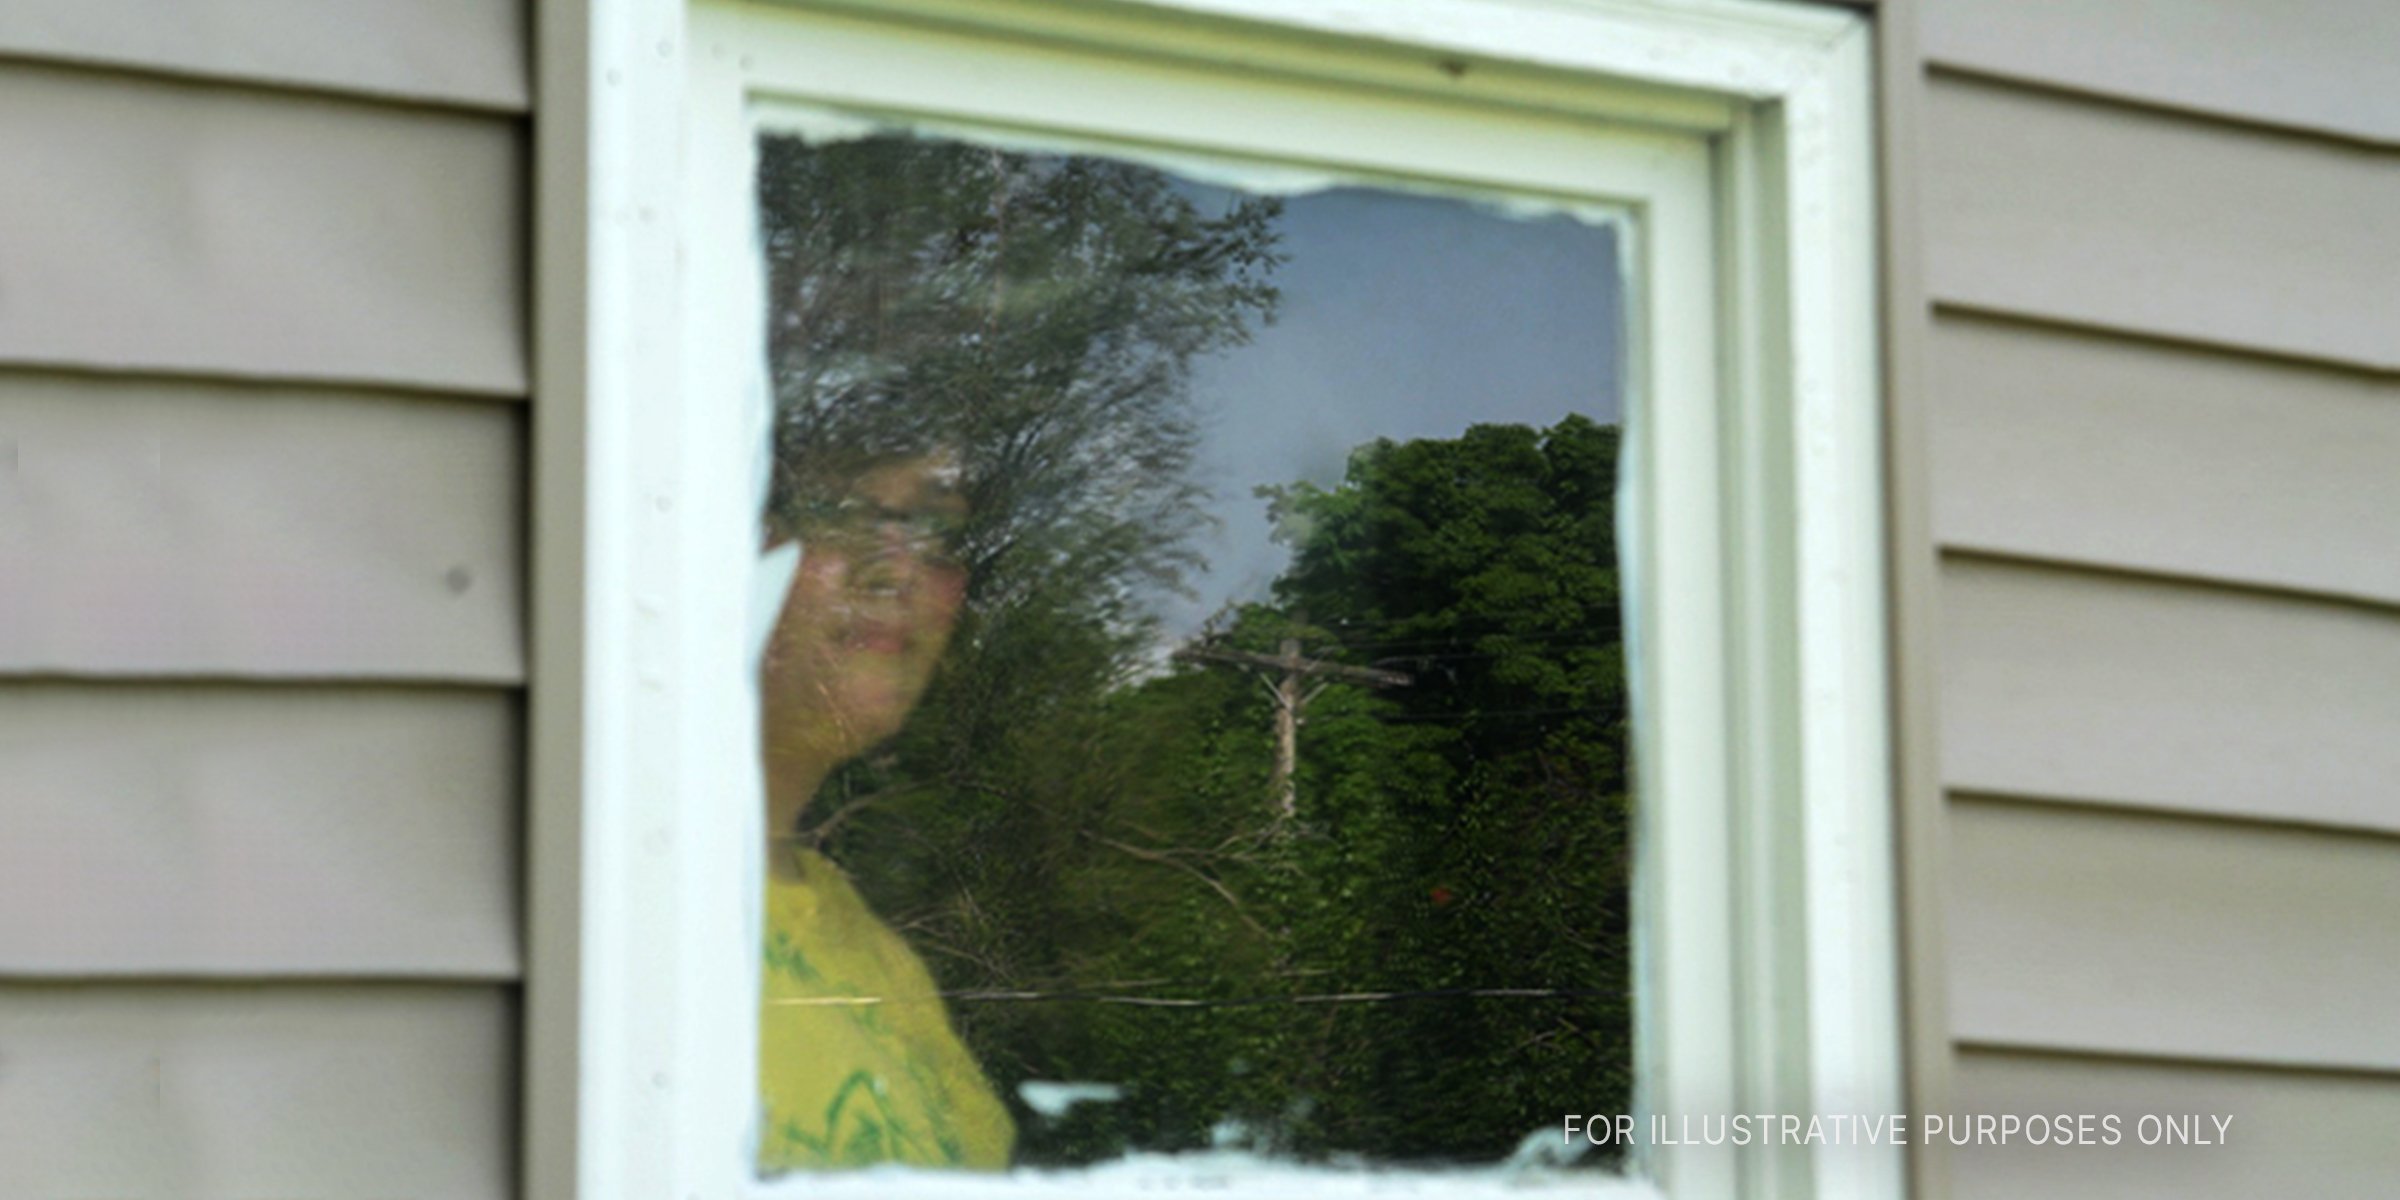 Source: Shutterstock | A woman in the window